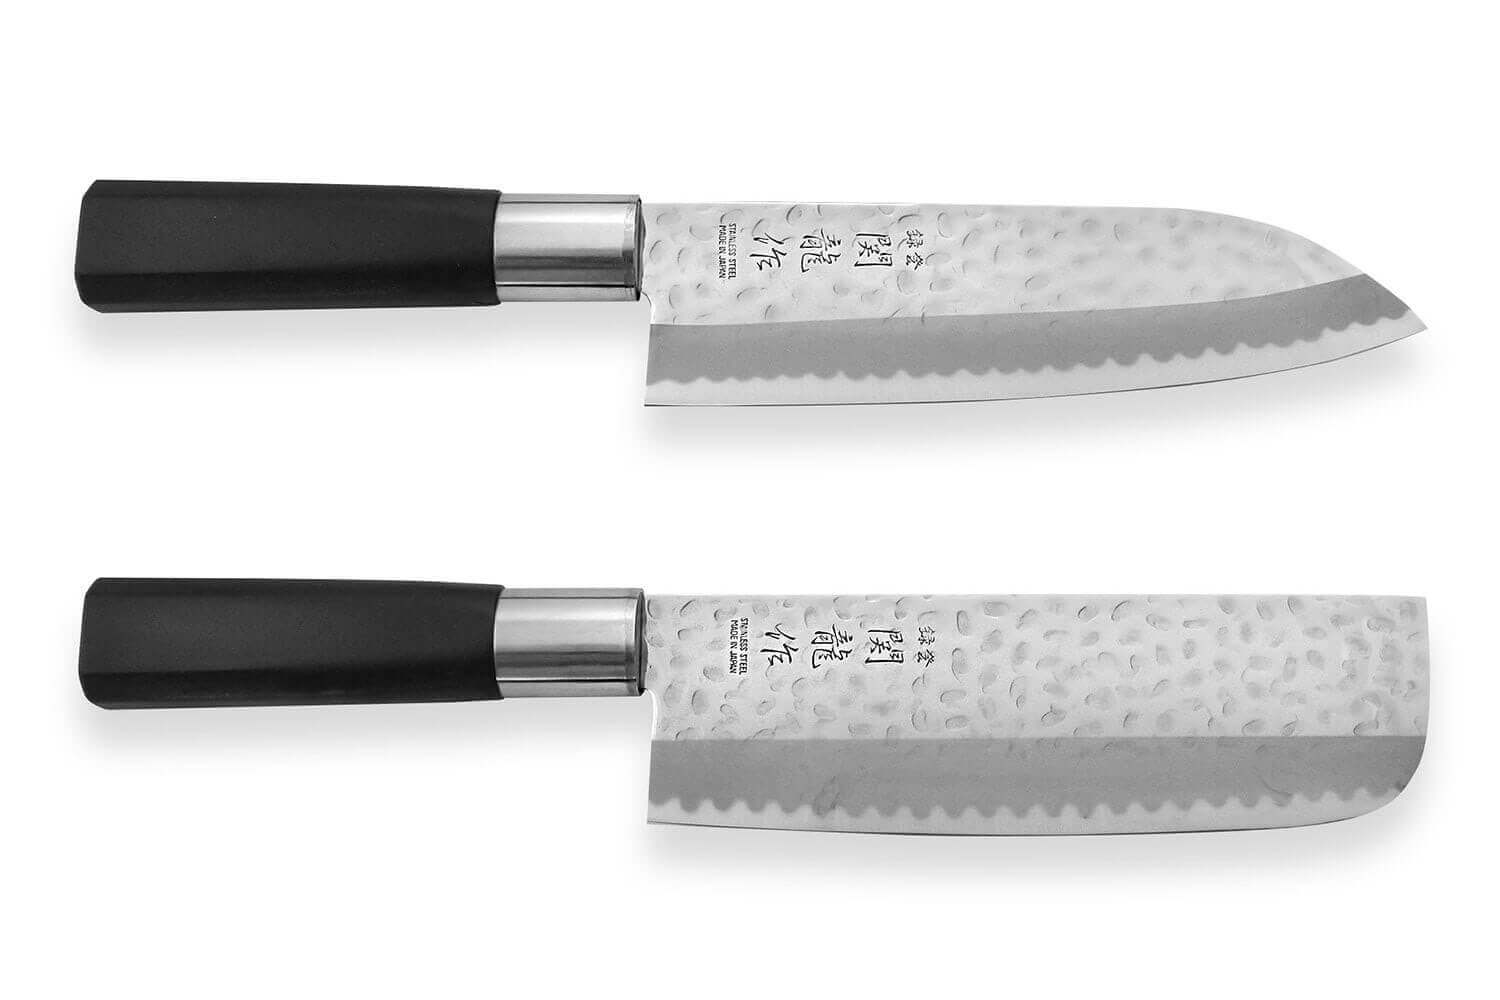 Couteau à Trancher Inox Forgé 34cm Gris pas cher 